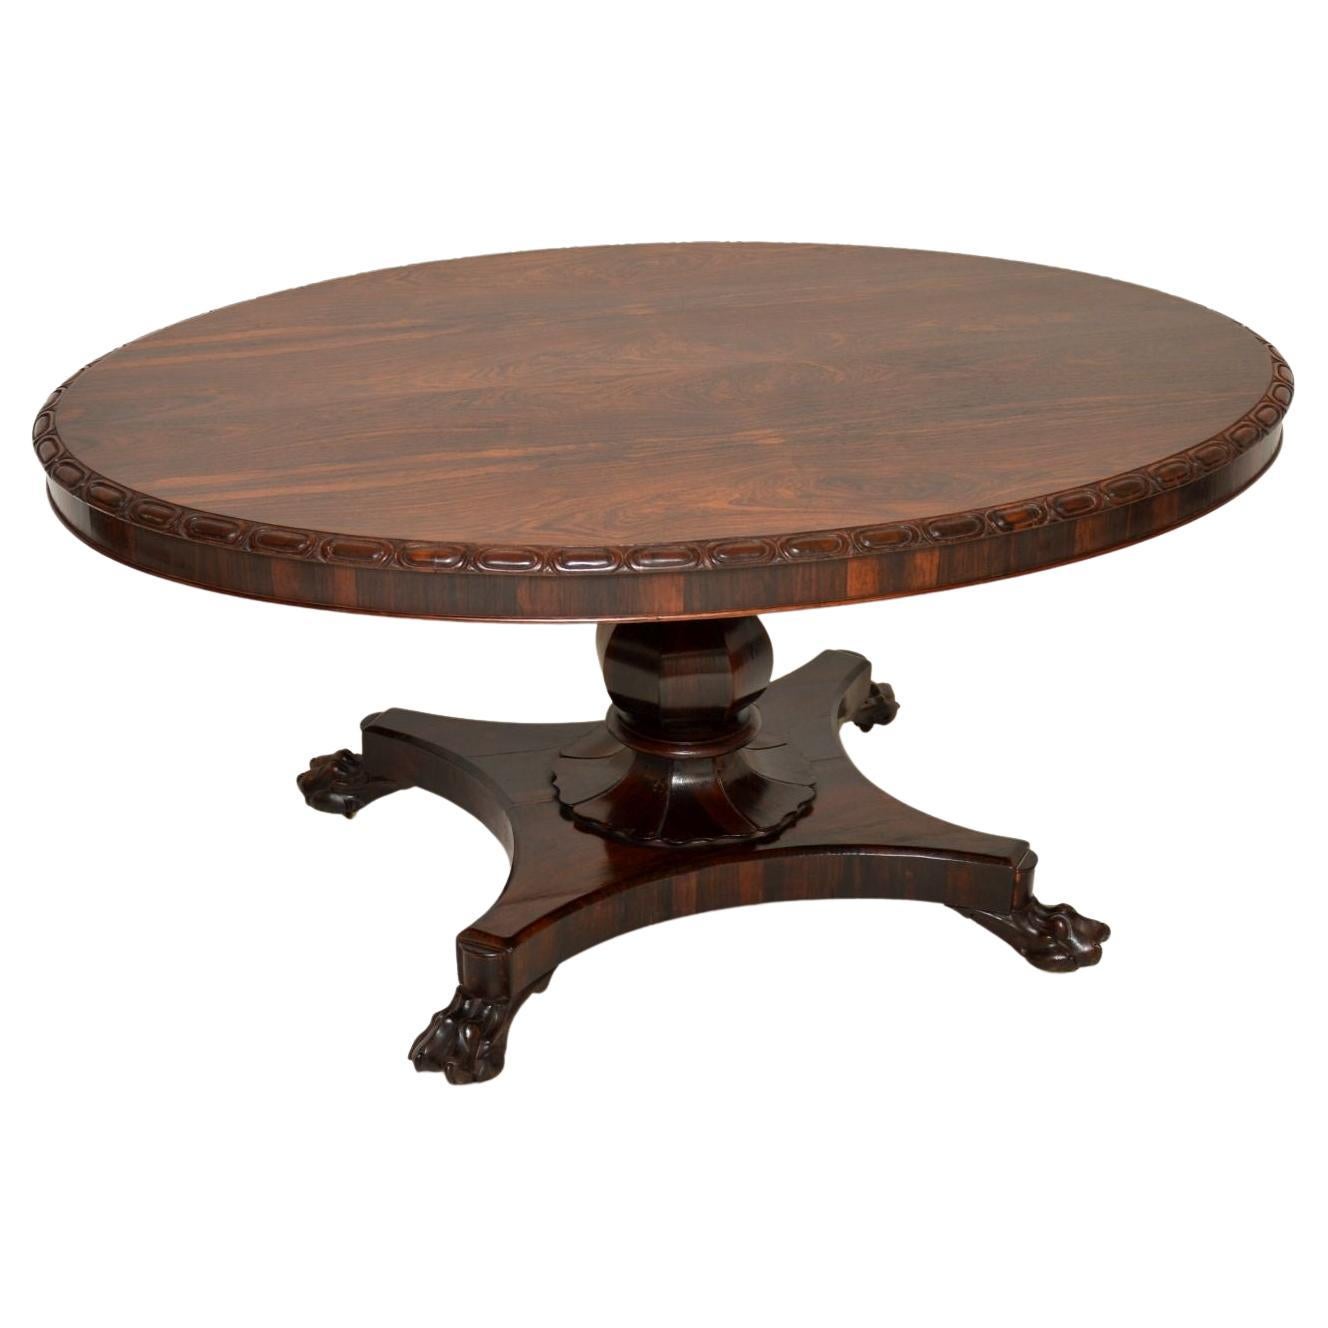 Un bel exemple de table d'époque William IV. Fabriqué en Angleterre, il date des années 1830-40.

Il est d'une superbe qualité, avec une belle sculpture sur le bord du plateau ovale et un socle magnifiquement sculpté. Le design de cette table, en